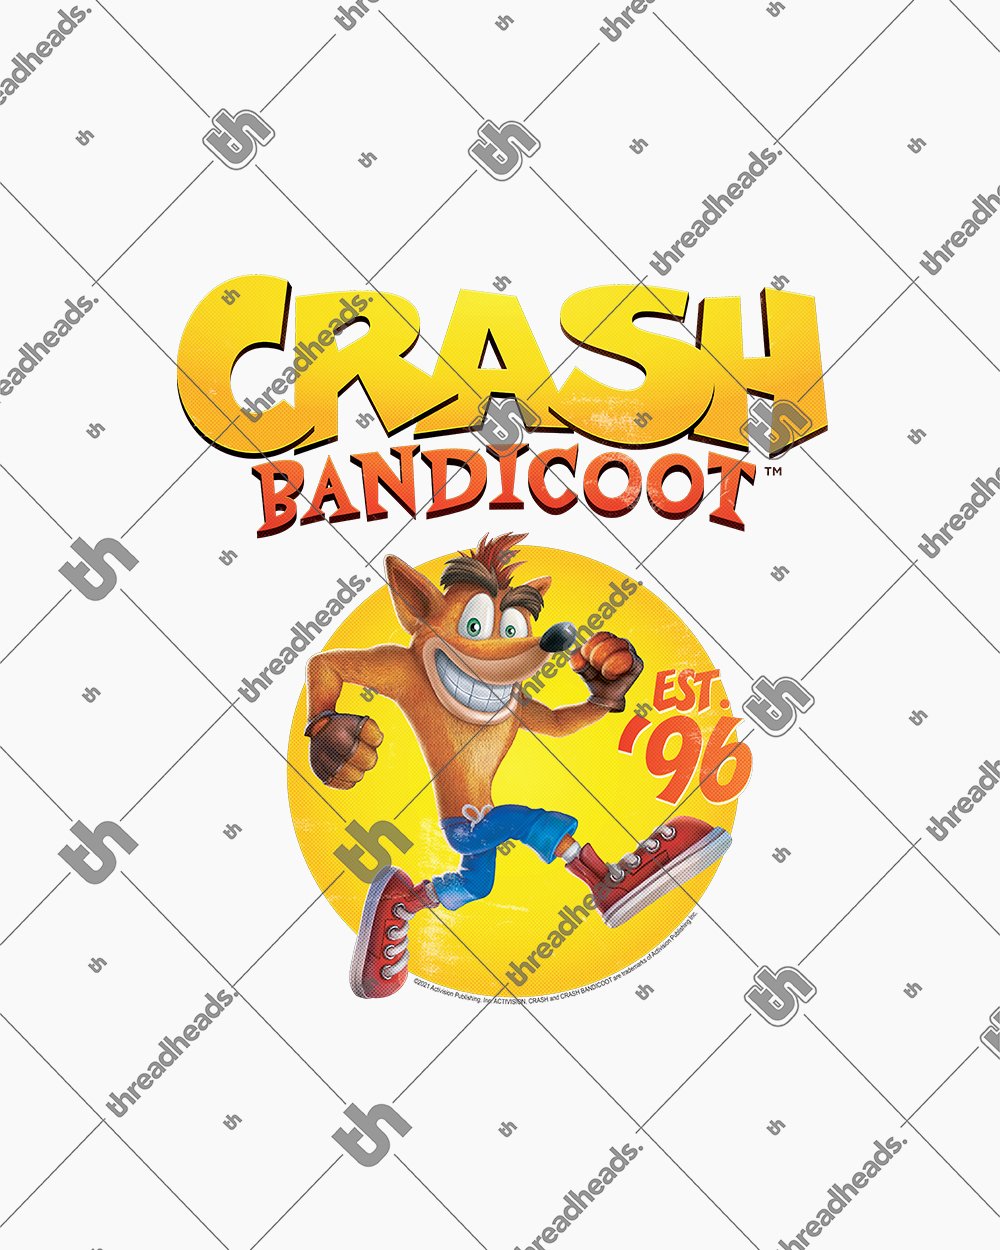 Crash Bandicoot Est 96 T-Shirt Europe Online #colour_white